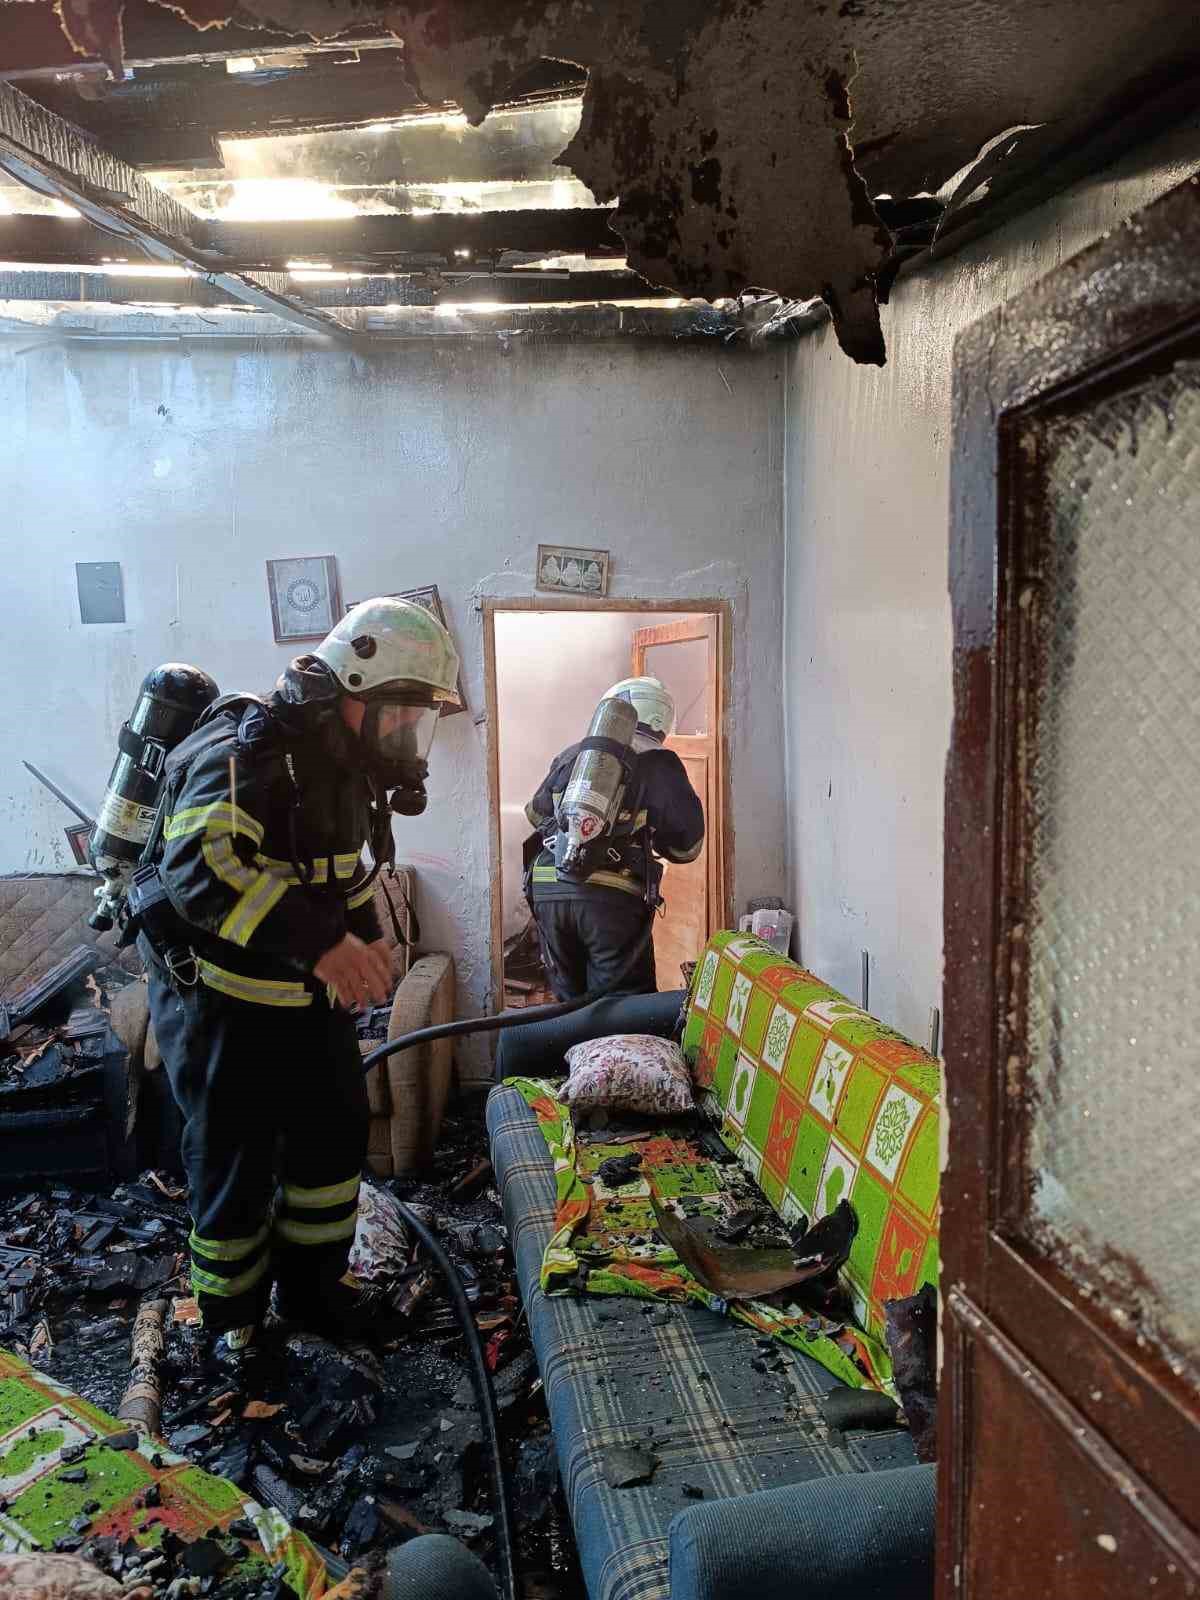 Dörtyol’da çıkan ev yangını söndürüldü
